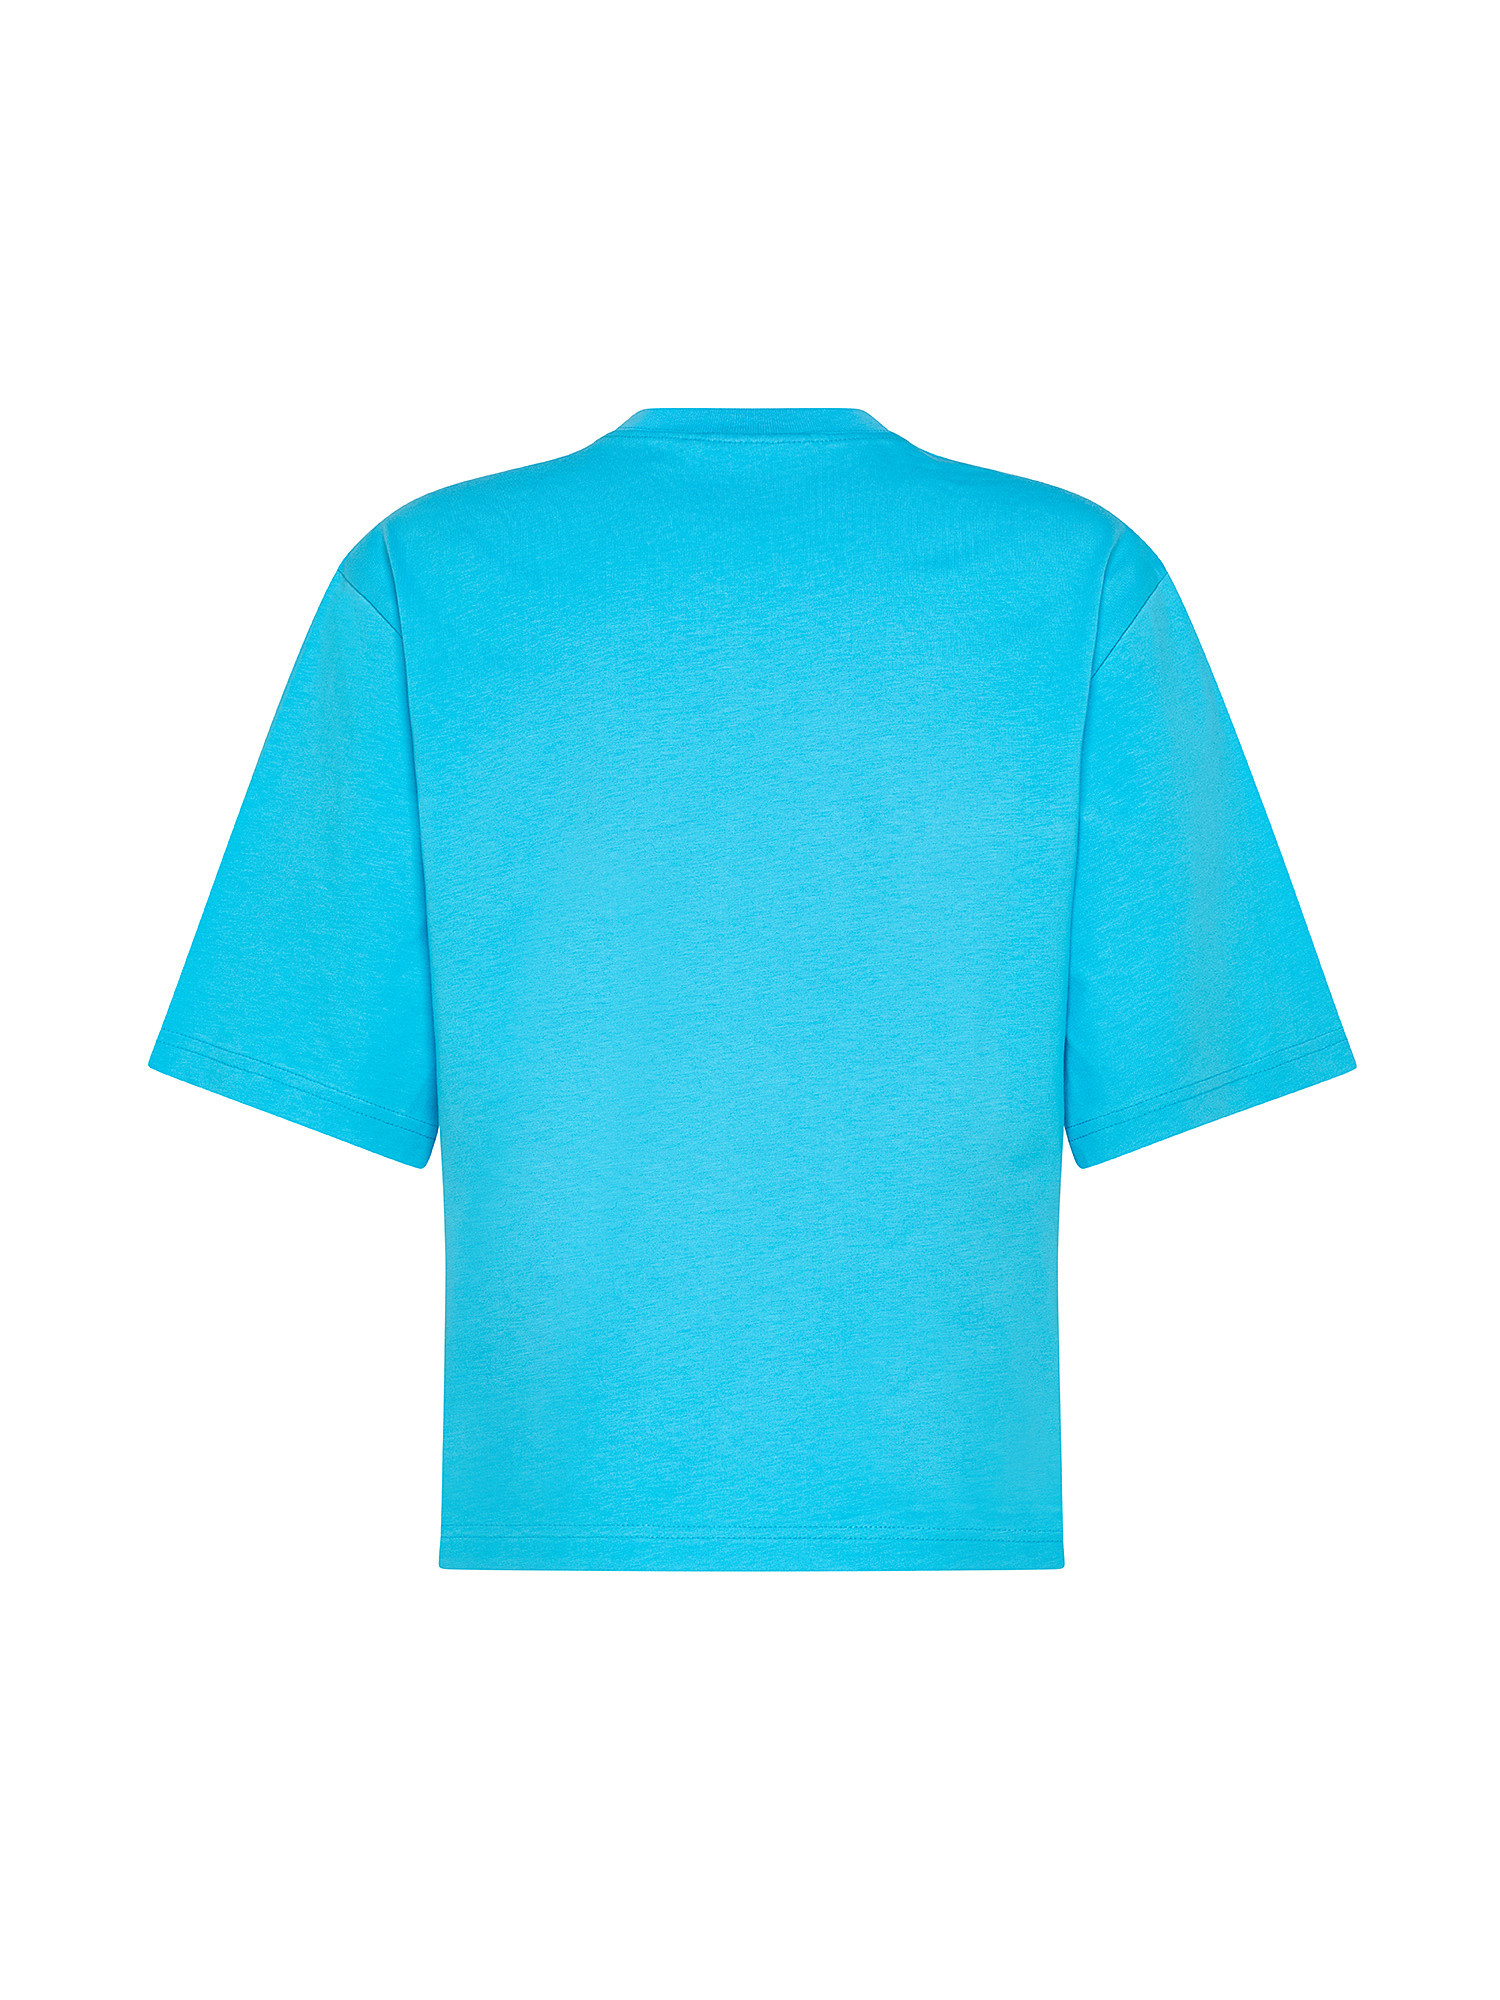 T-shirt Eye Star, Azzurro turchese, large image number 1